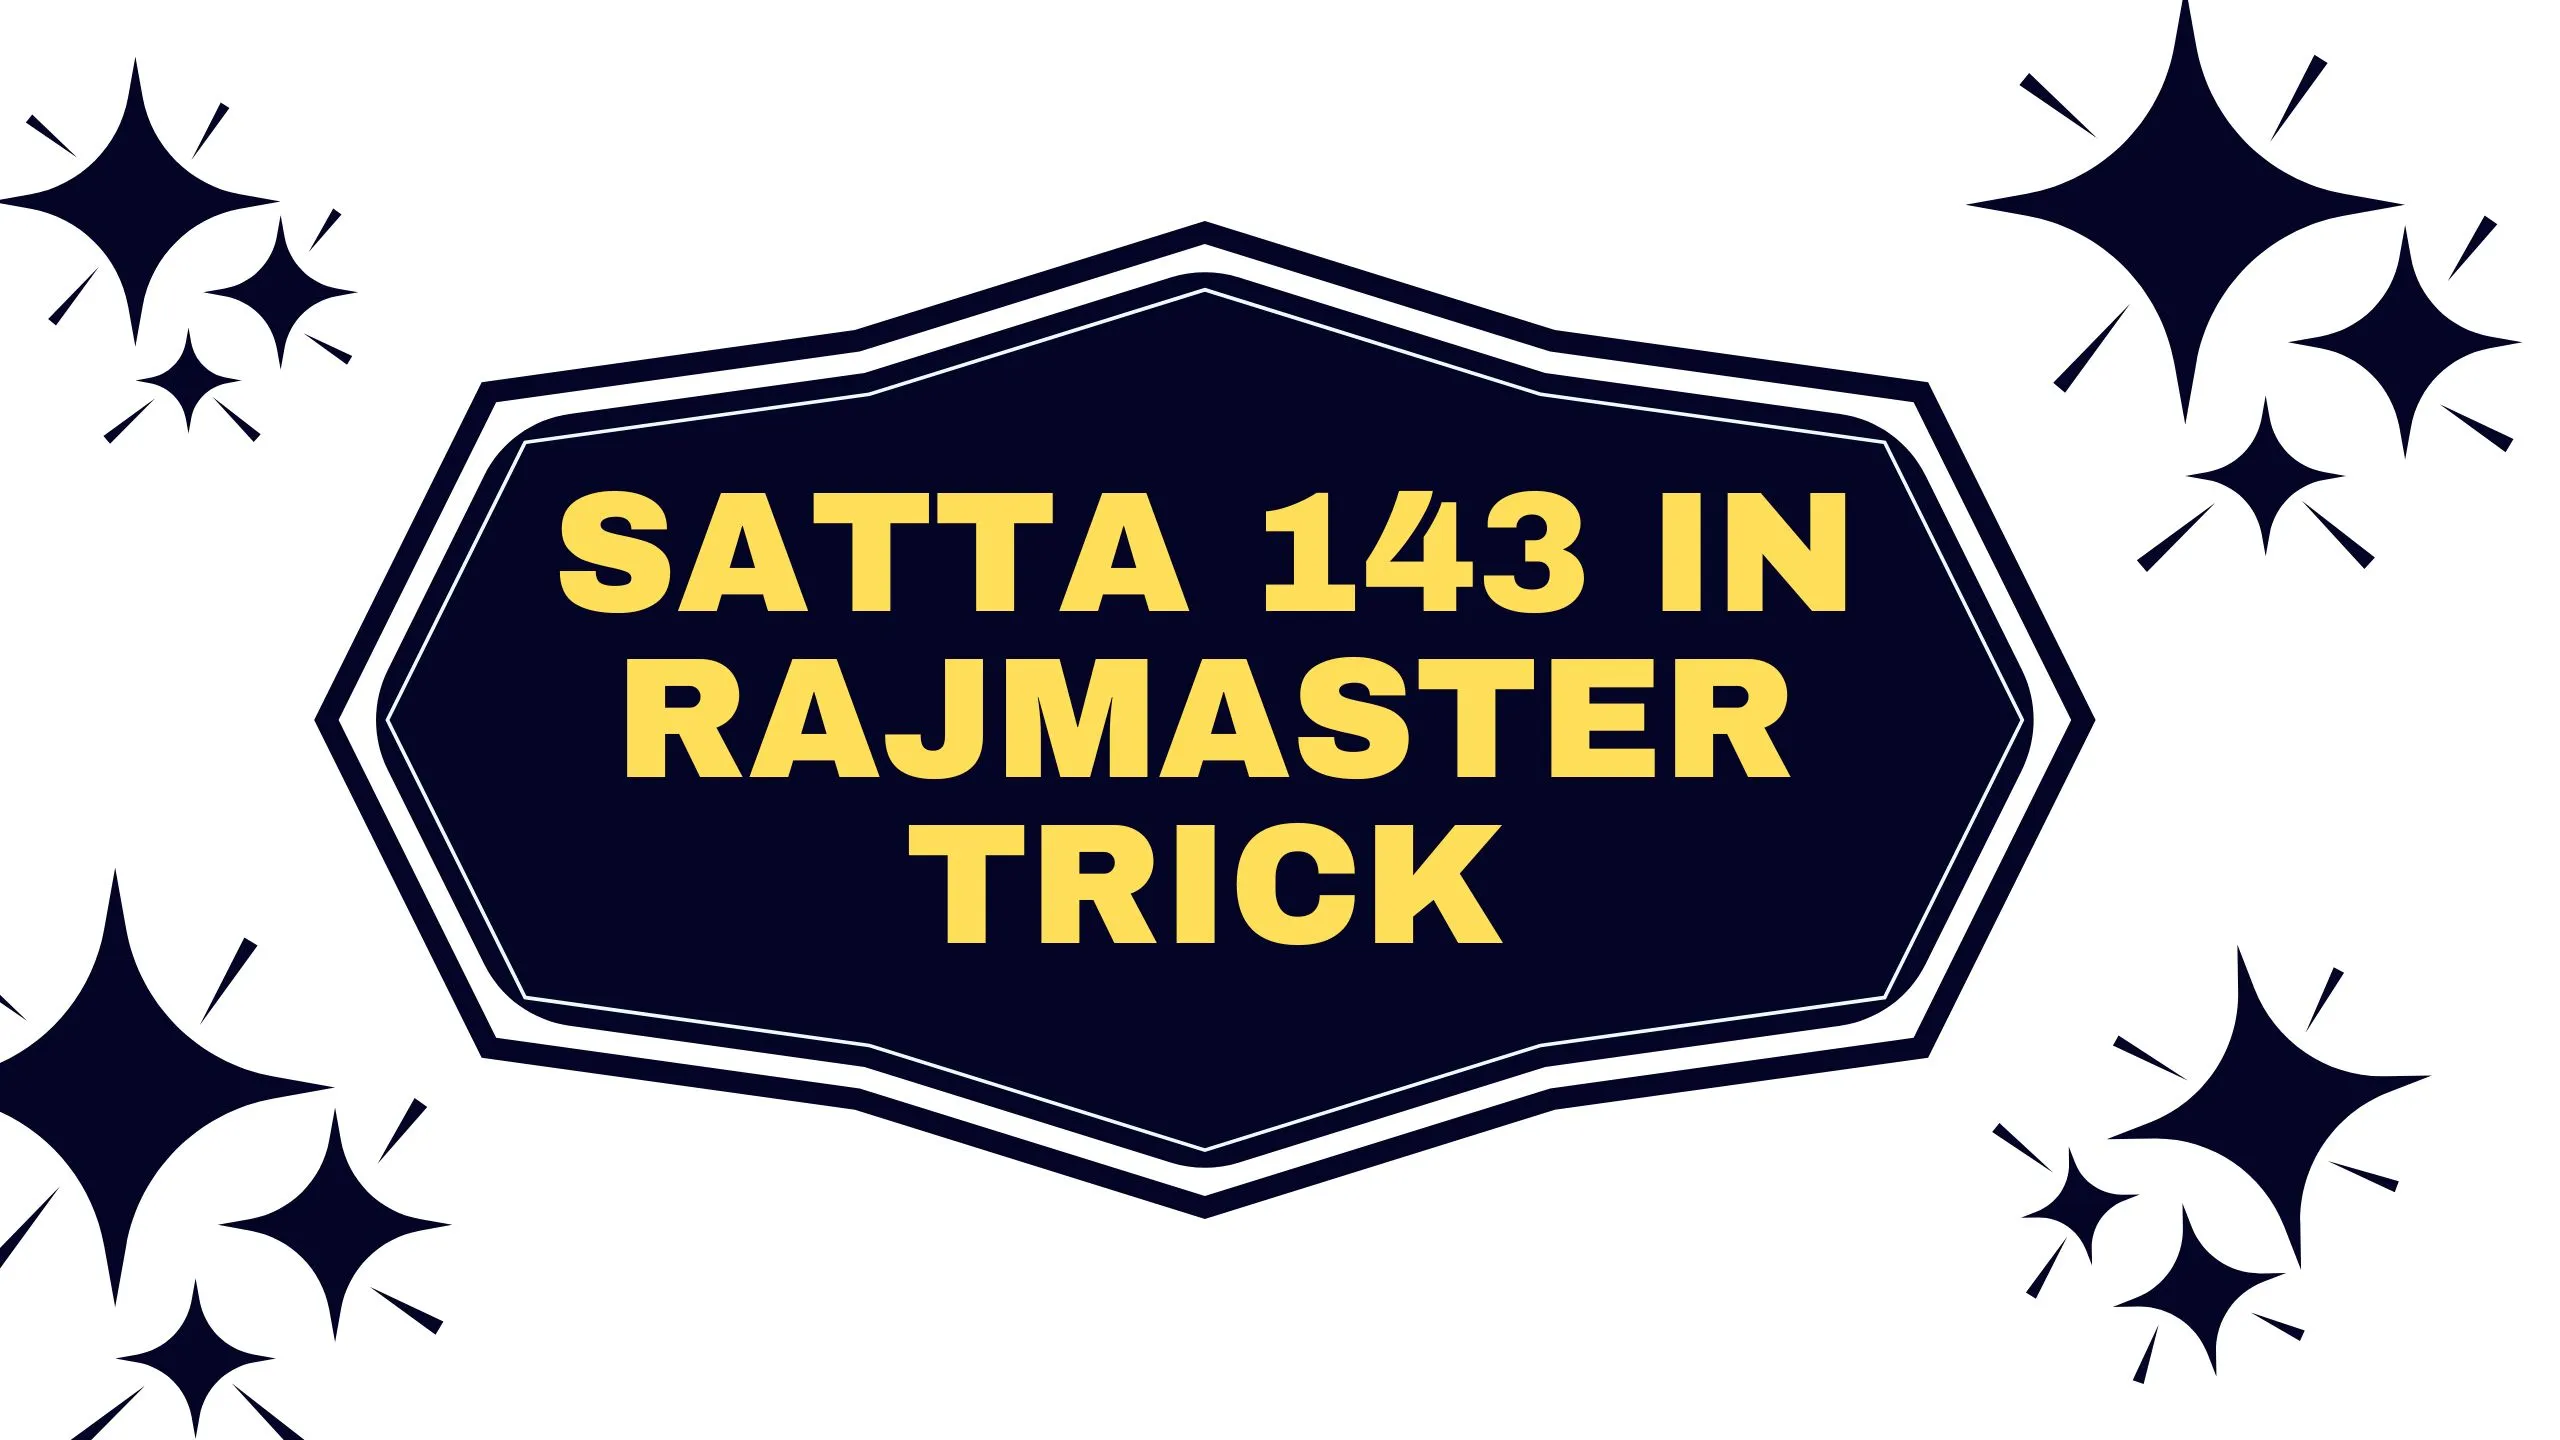 Satta 143 In Rajmaster